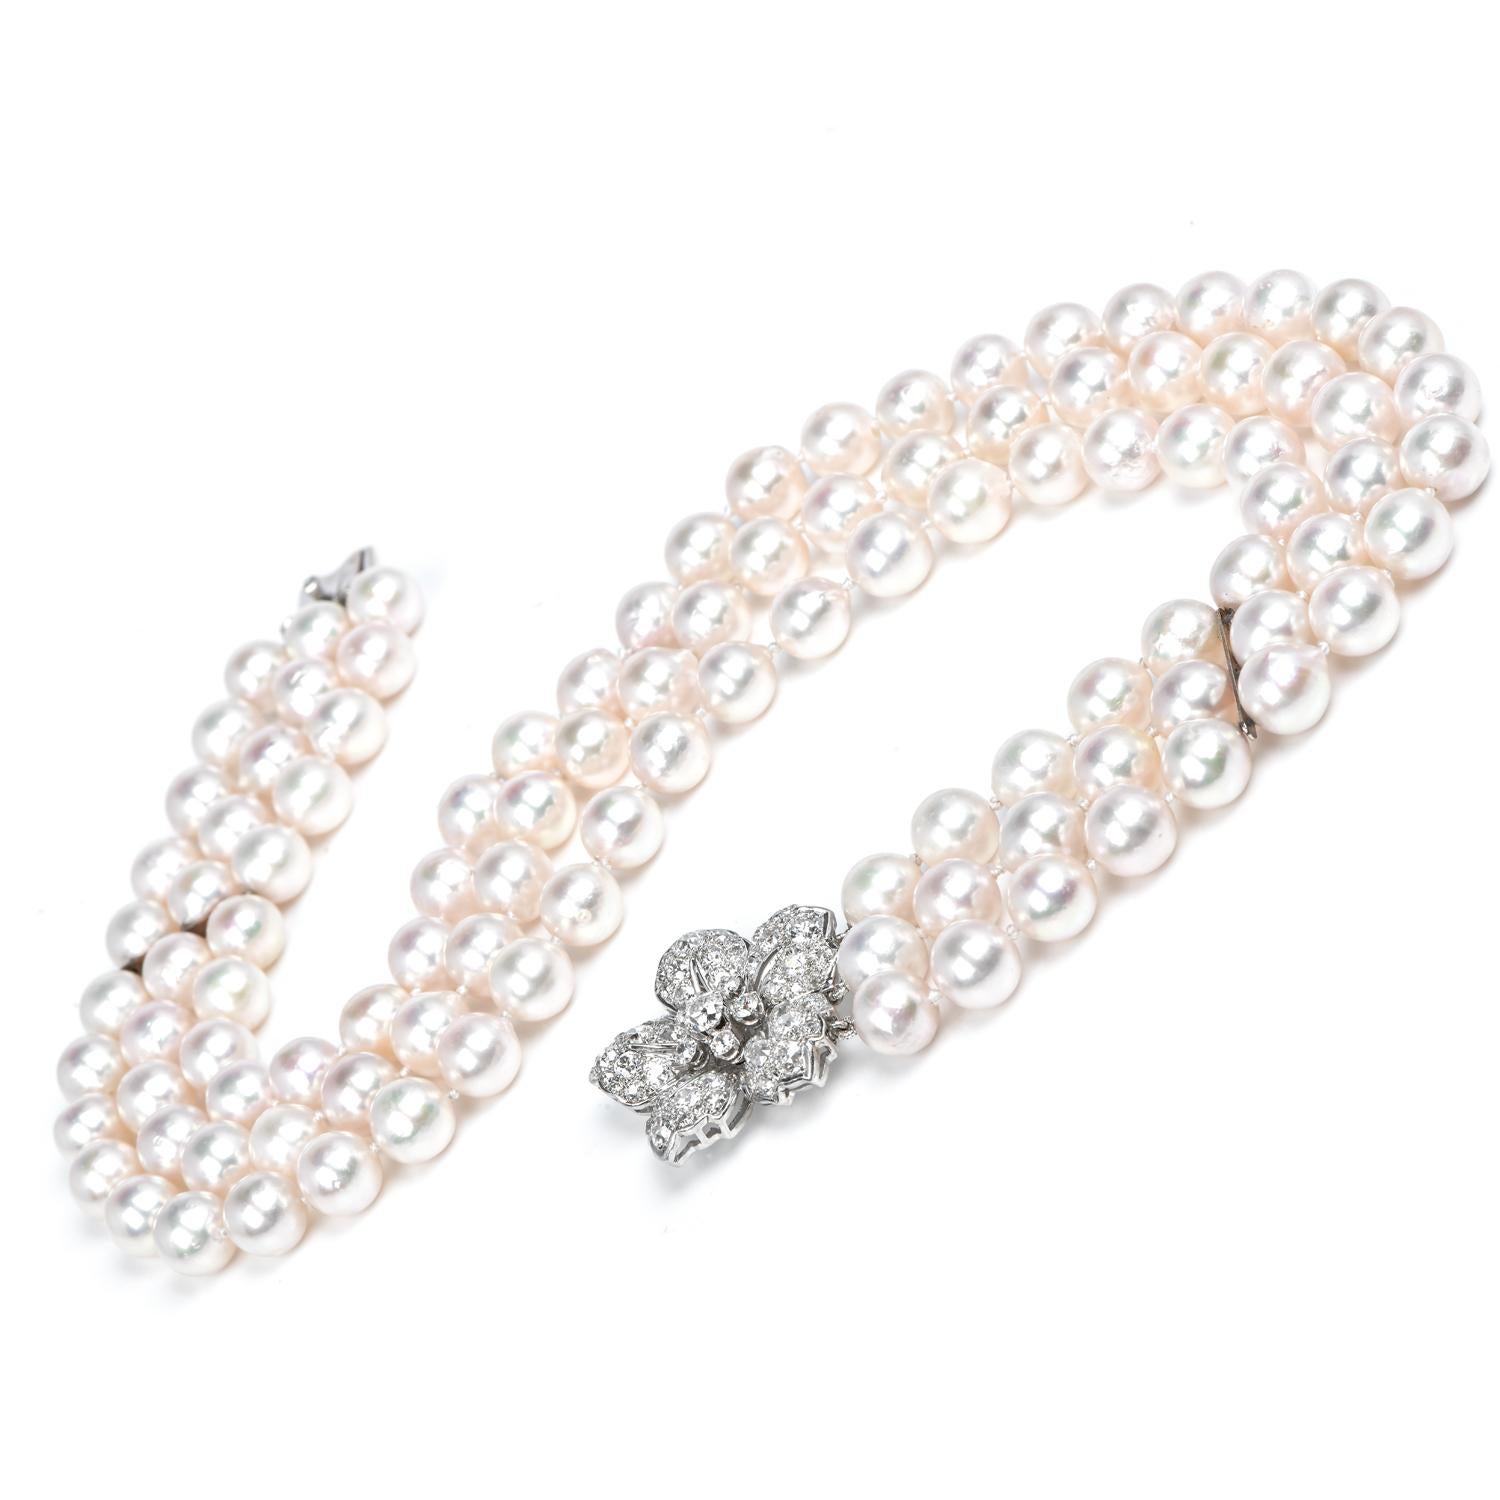 Als Ergänzung zu Ihrer Diamanten- und Perlenkollektion ist diese Halskette das Upgrade, das Ihren Stil auf die nächste Stufe hebt. 

Ein dreifacher Strang echter japanischer Akoya-Perlen, hochglänzend, mit rosa Untertönen, 9 mm groß.

Das Zentrum